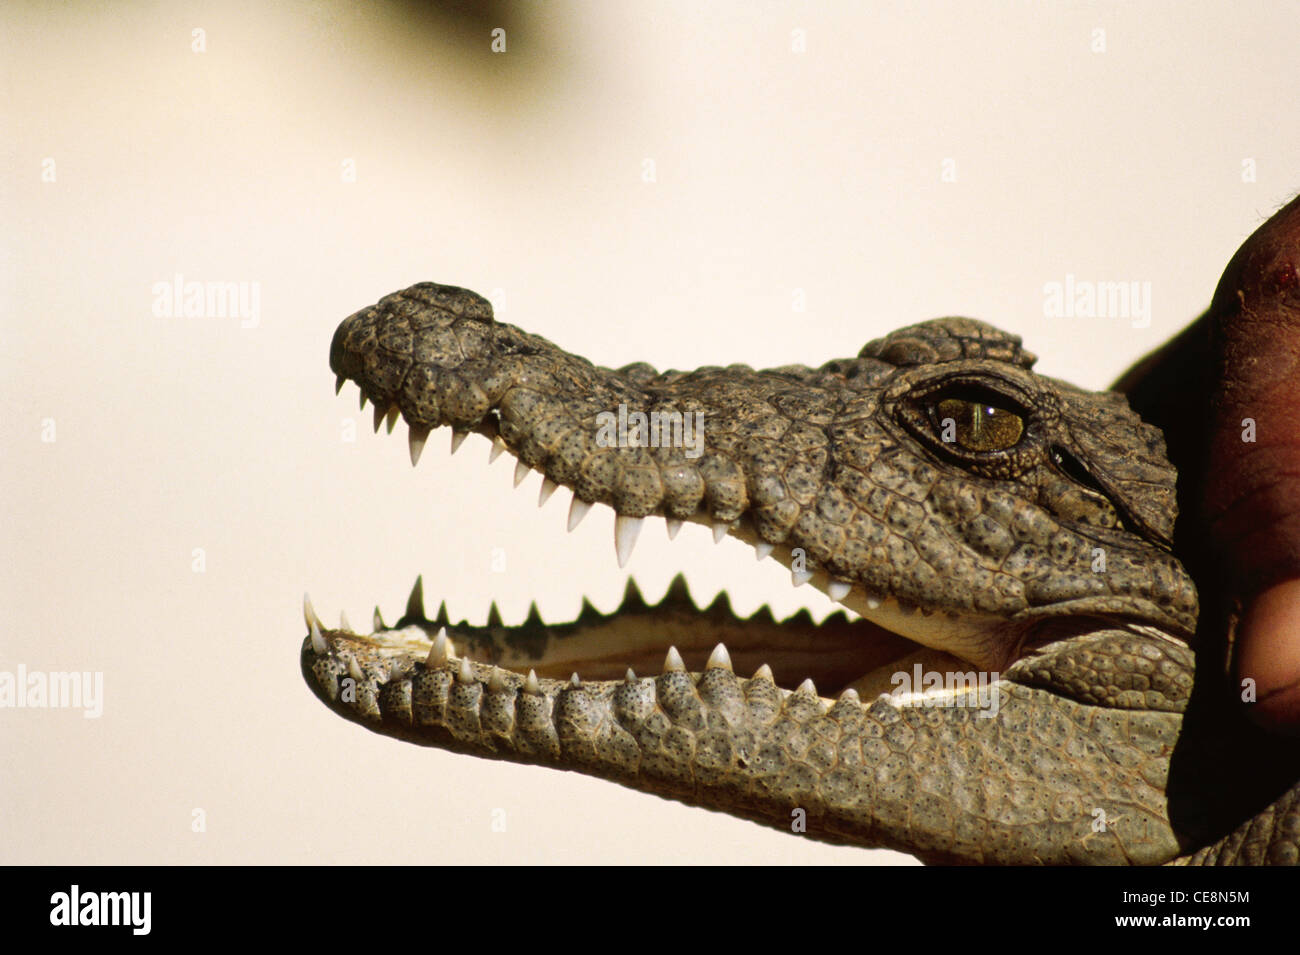 80007 IKA : Indian Marsh profil crocodile Crocodylus palustris inde bouche ouverte Banque D'Images